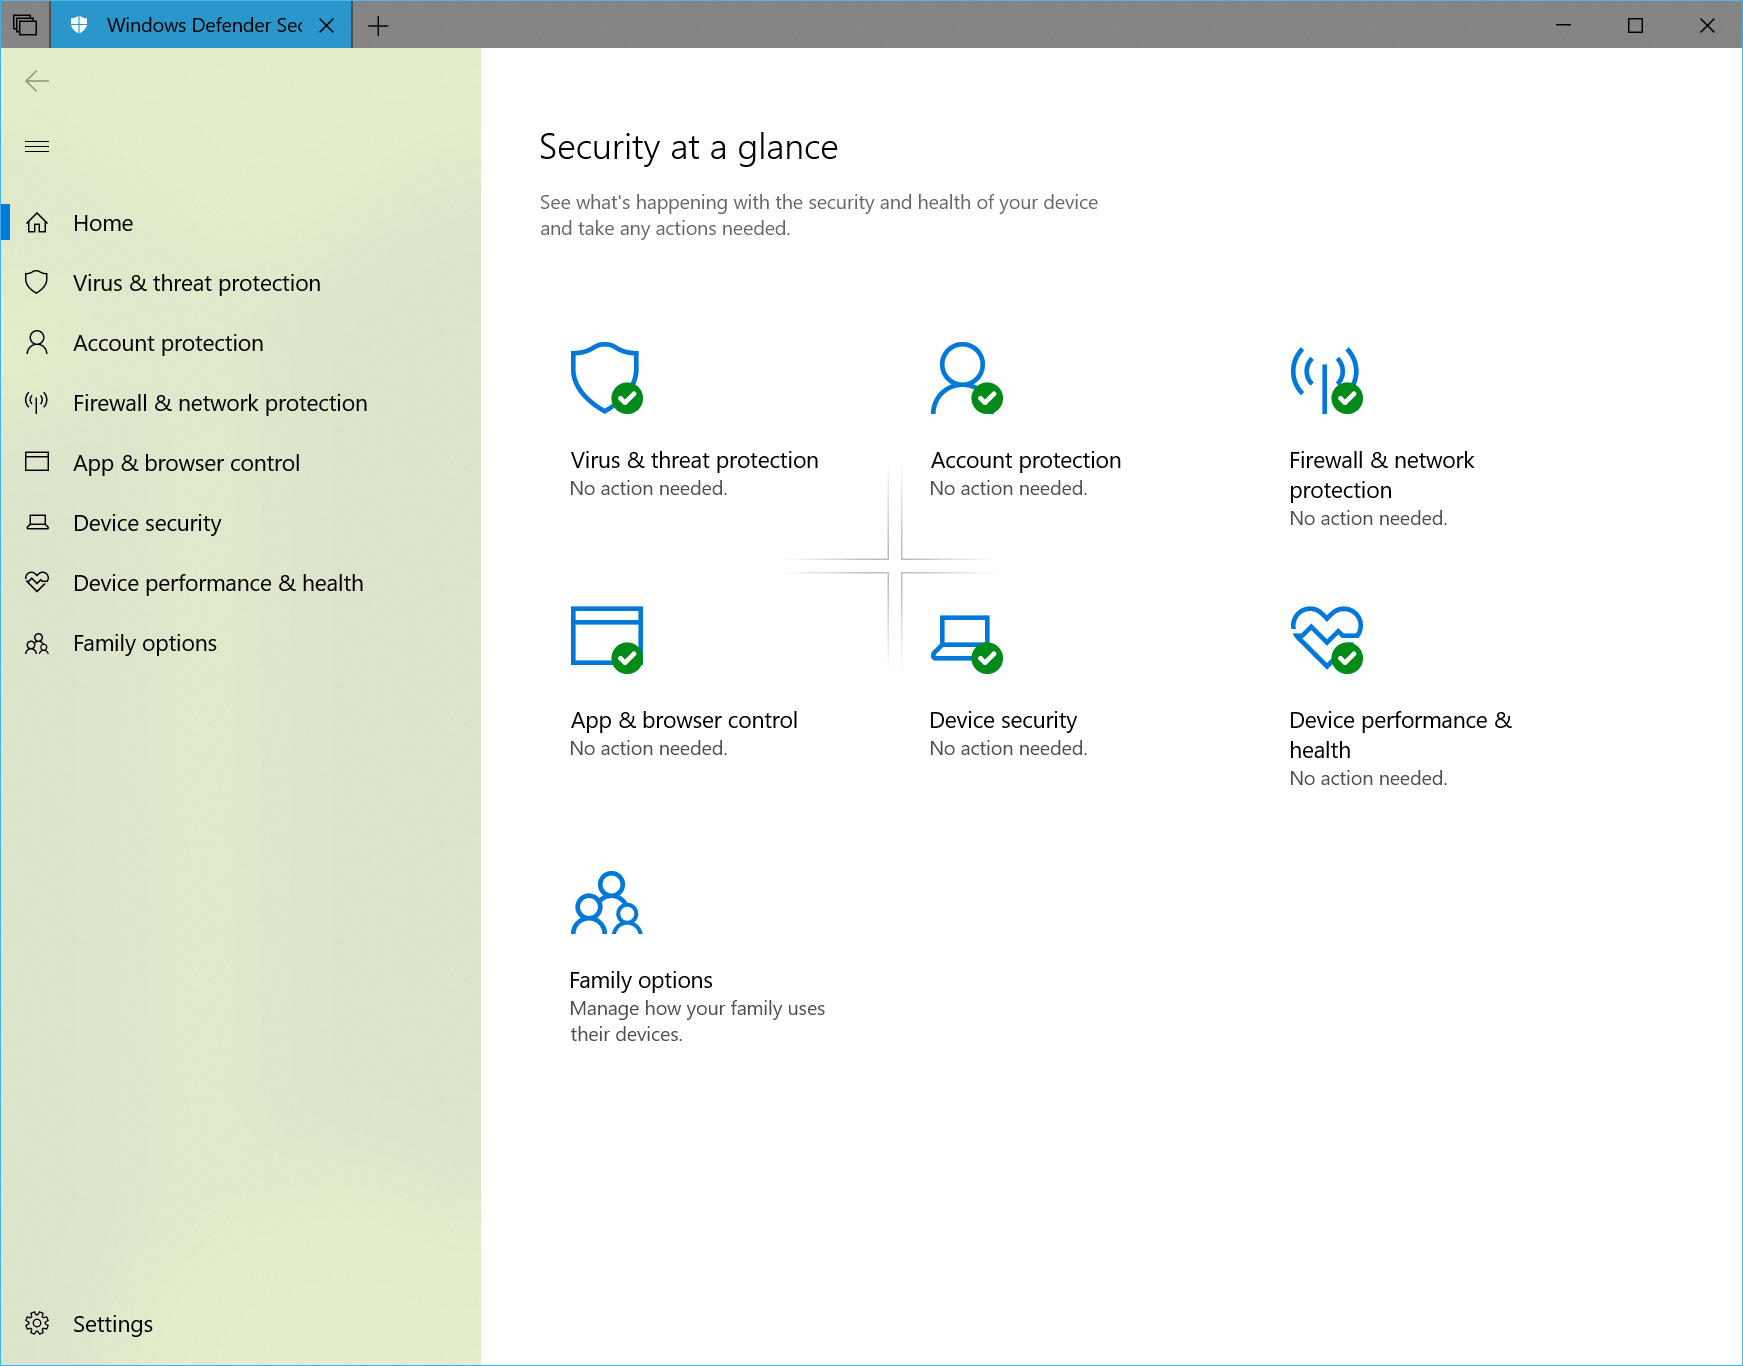 微软向 Insiders 发布新的 Windows 10 Insider Preview Build 17650 (RS5) Skip Ahead build